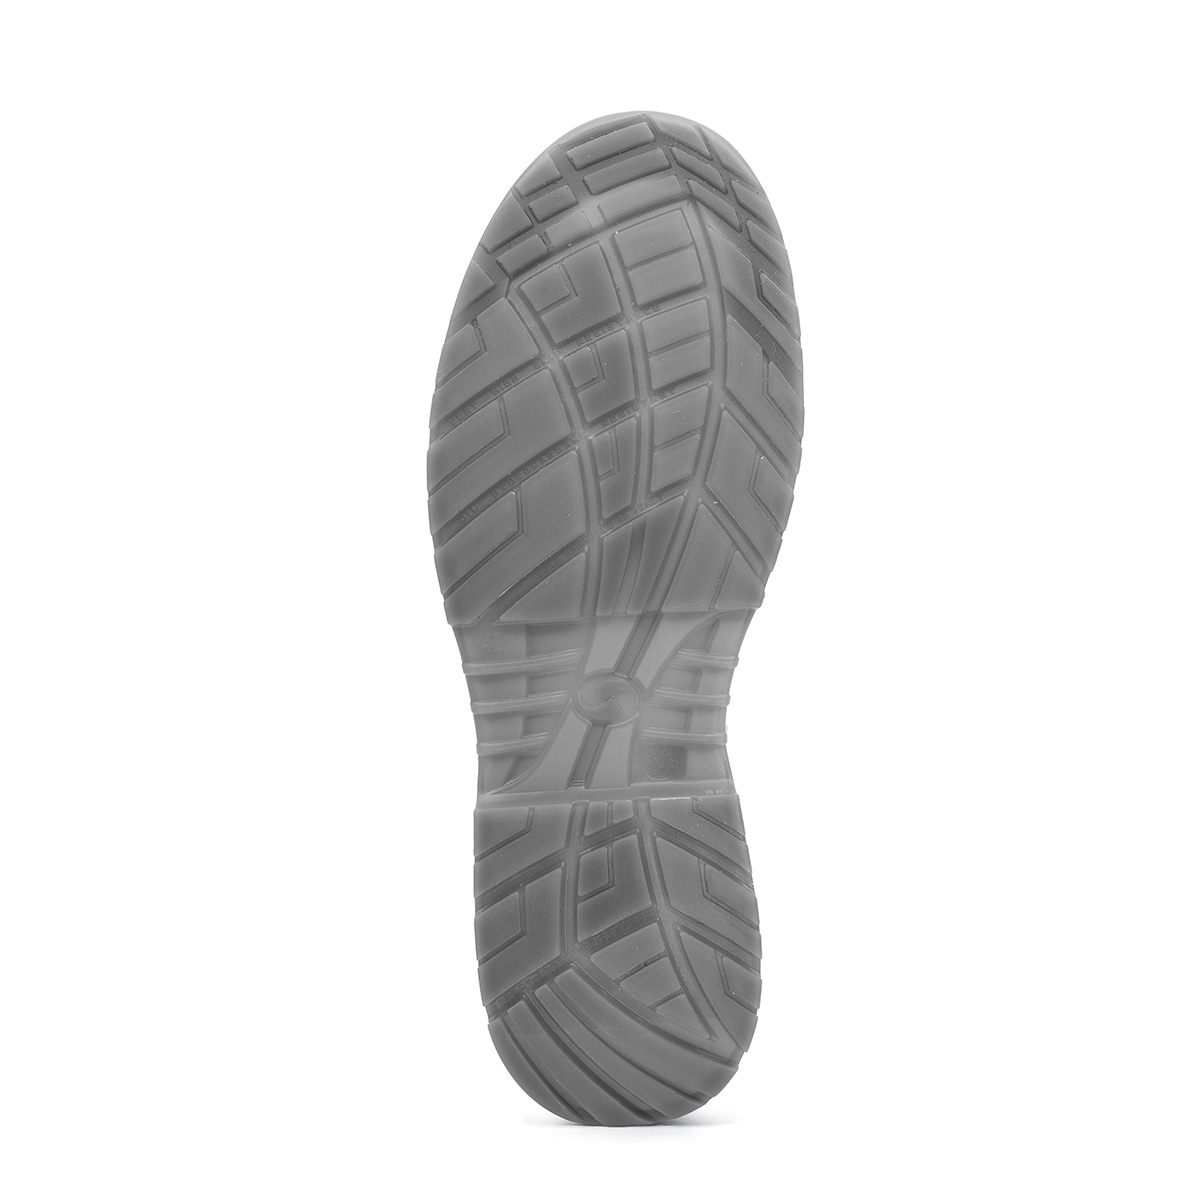 Crystal BERGAMO - con Shoes Ankle SRC modello classe Codice 86206-00 protezione boot - Safety Peak S2 di Sixton